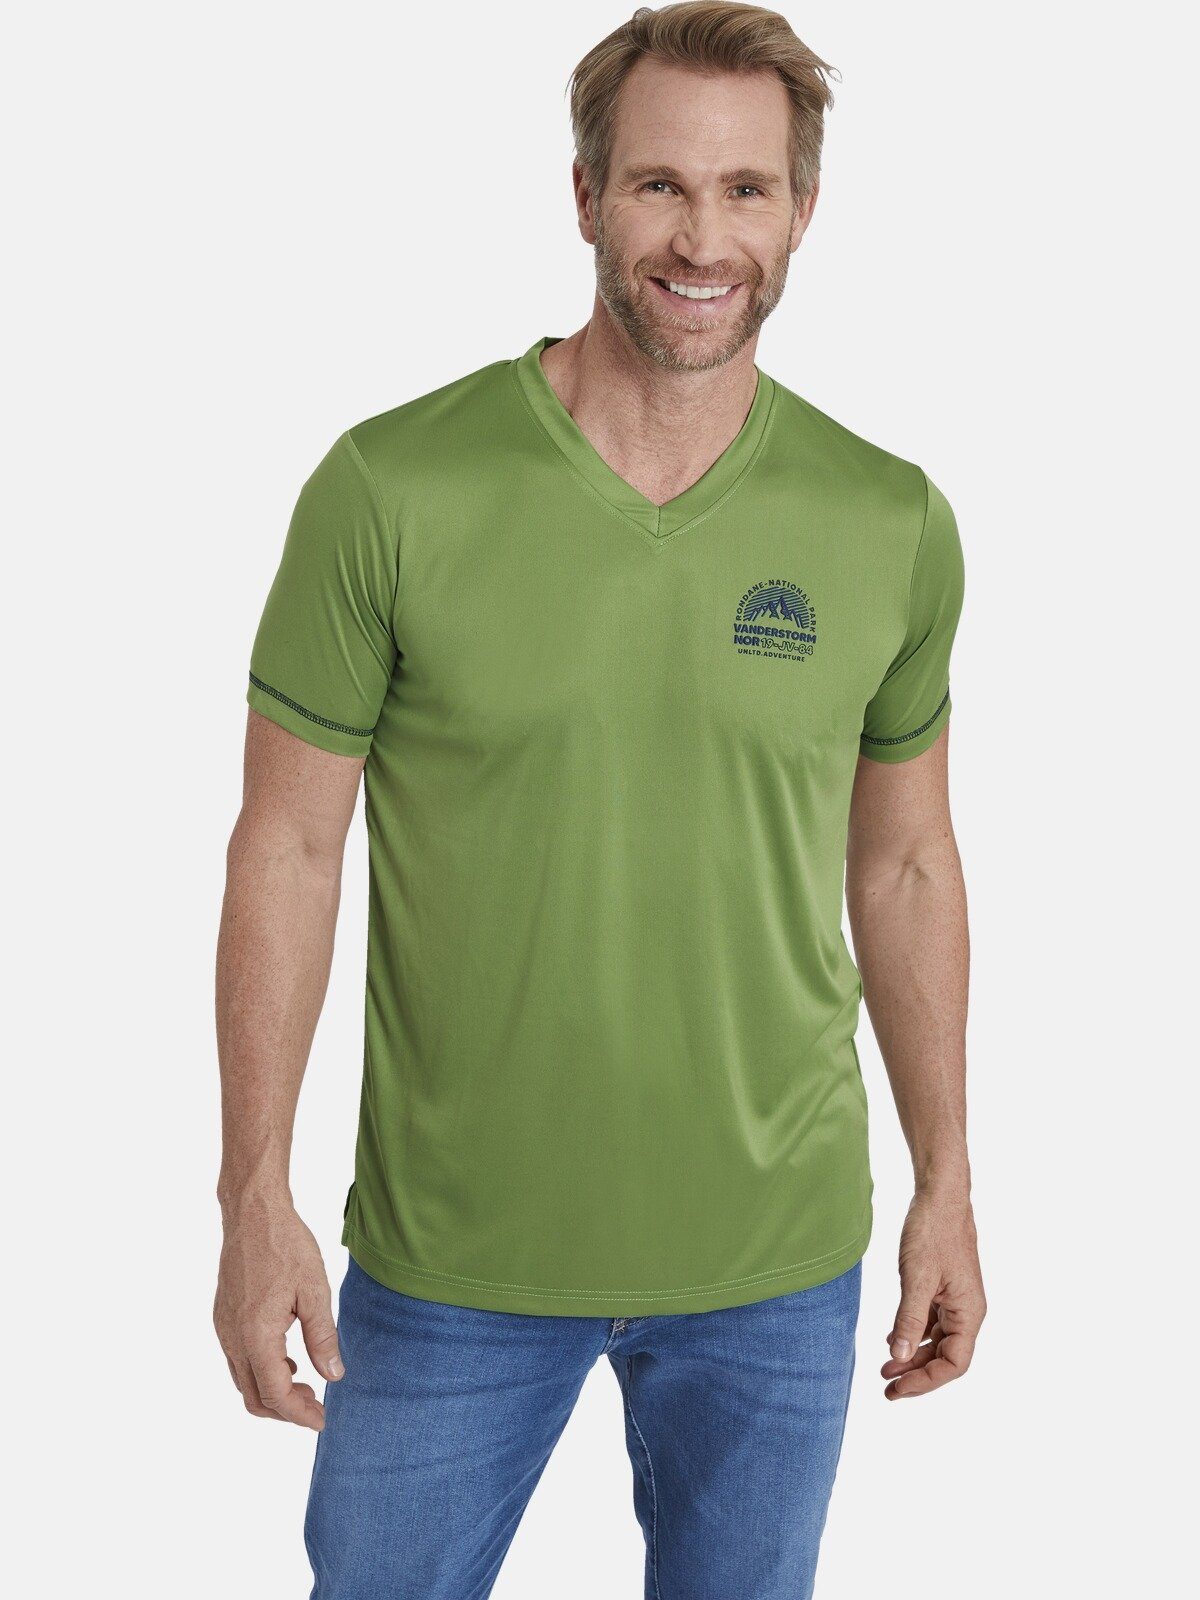 Jan Vanderstorm T-Shirt KLARIN haut- und pflegefreundlich grün